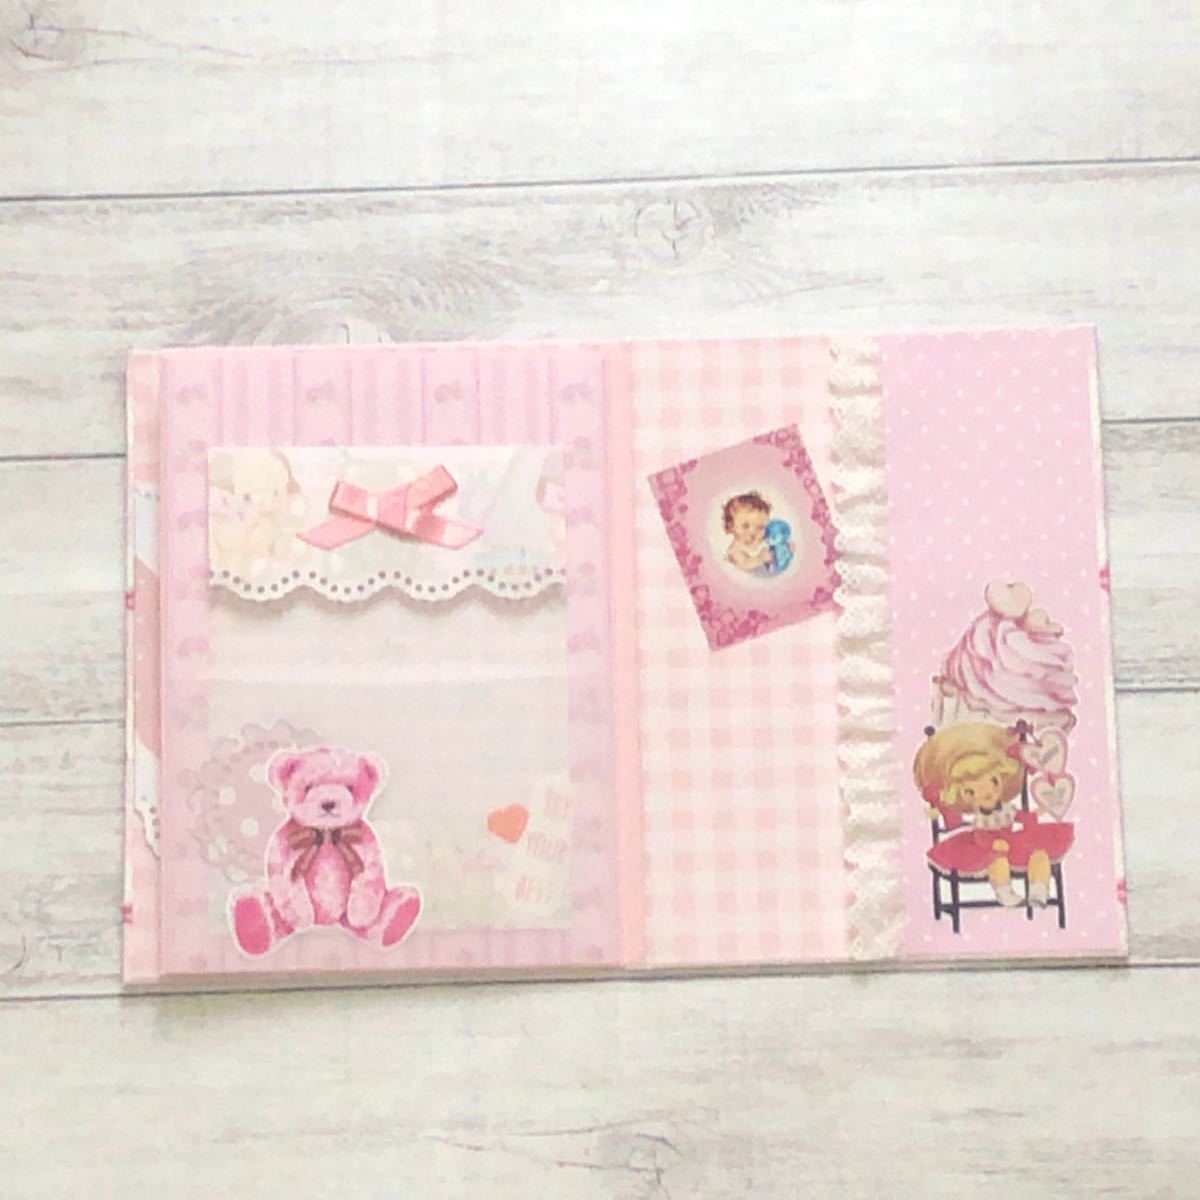 おすそ分けファイル☆平袋のセット☆紙もの色々詰め込みます☆ピンクの可愛い系コラージュ メモ シール